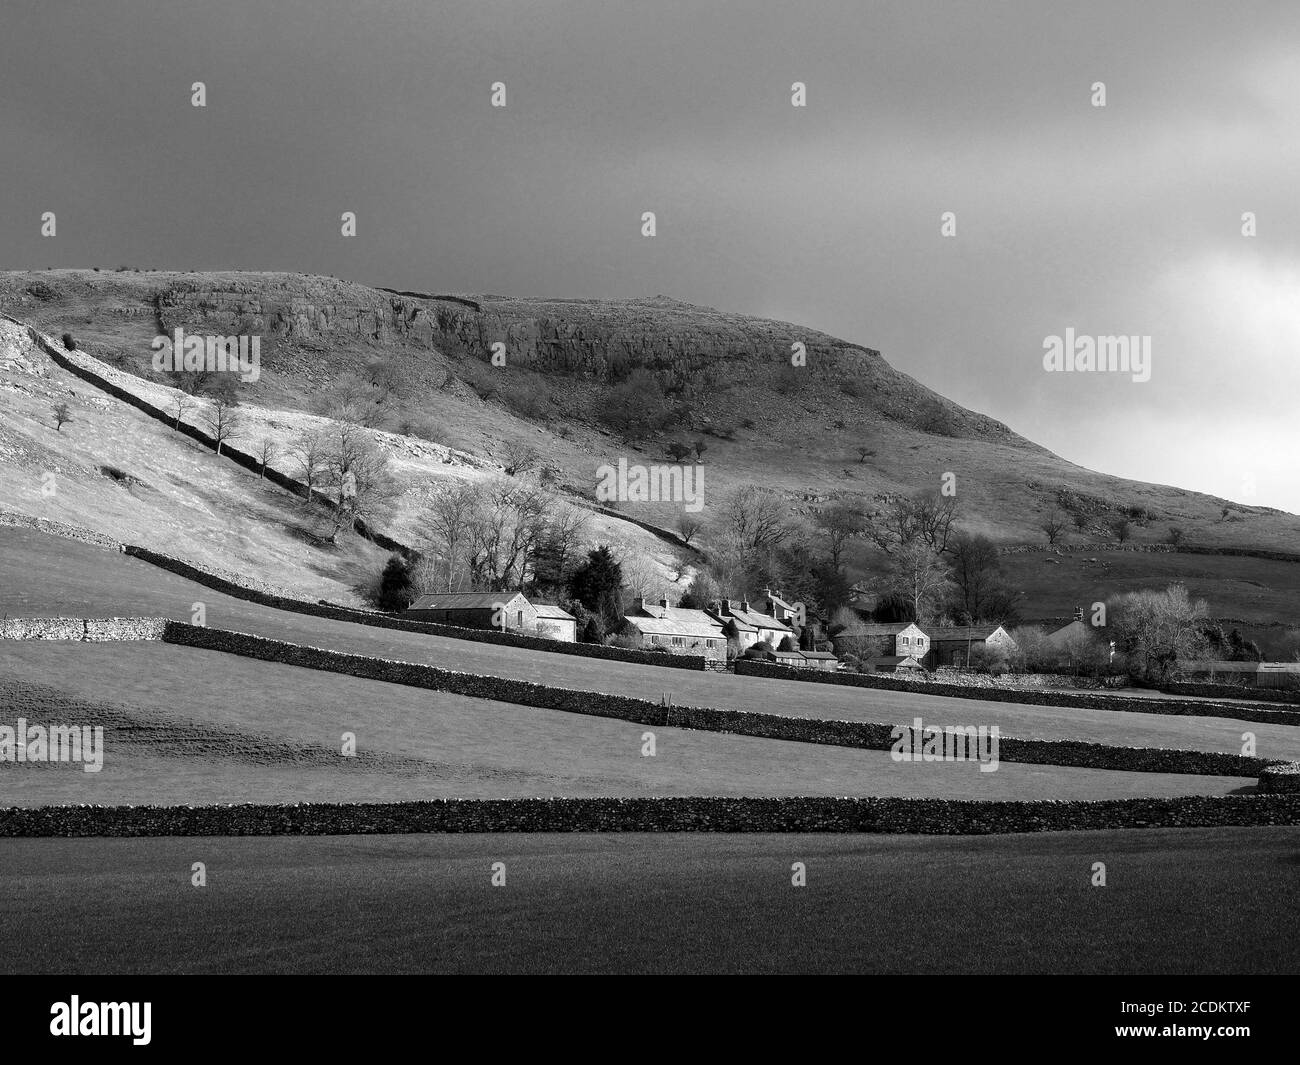 Vue en noir et blanc sur les bâtiments en pierre du village de Feizor au milieu des champs, des murs en pierre sèche et une cicatrice calcaire escarpée près d'Austwick, North Yorkshire, Angleterre, Royaume-Uni Banque D'Images